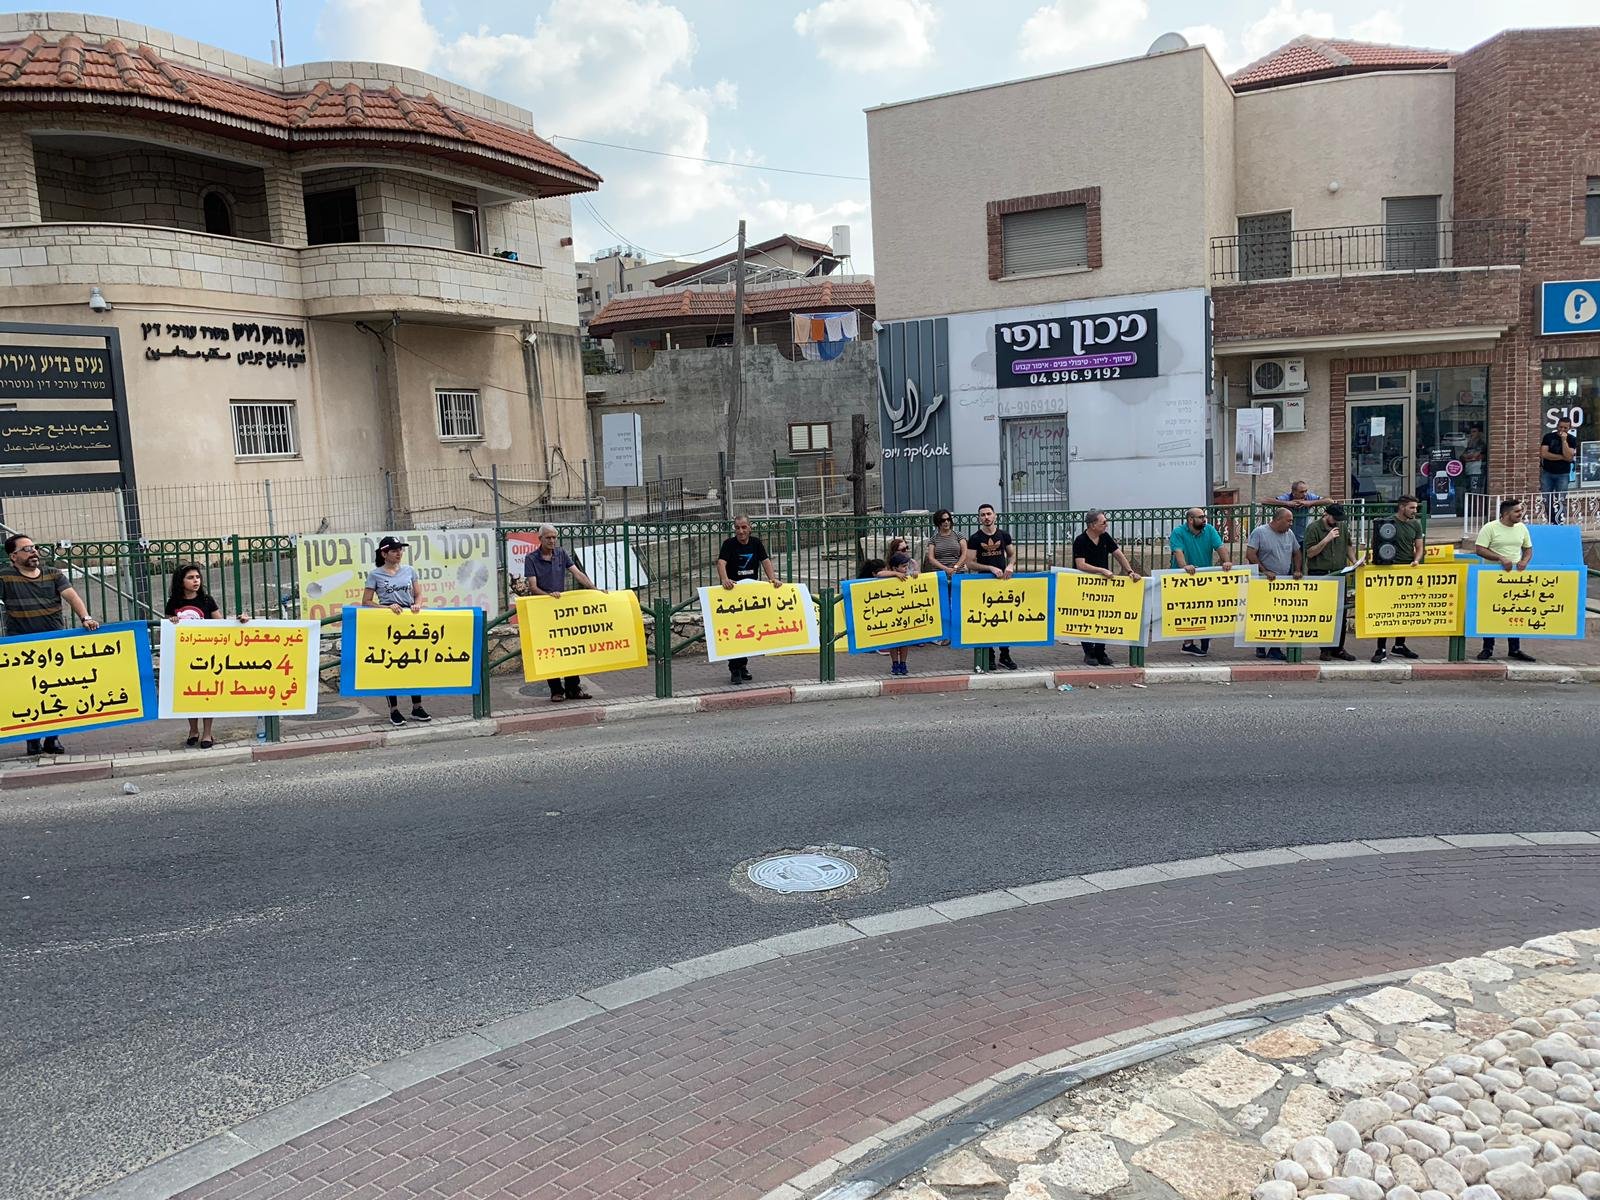 أهالي كفر ياسيف يستمرون بالاحتجاج ضد مخطط شارع 70 الذي يتضمّن مصادرة أراضيهم -5